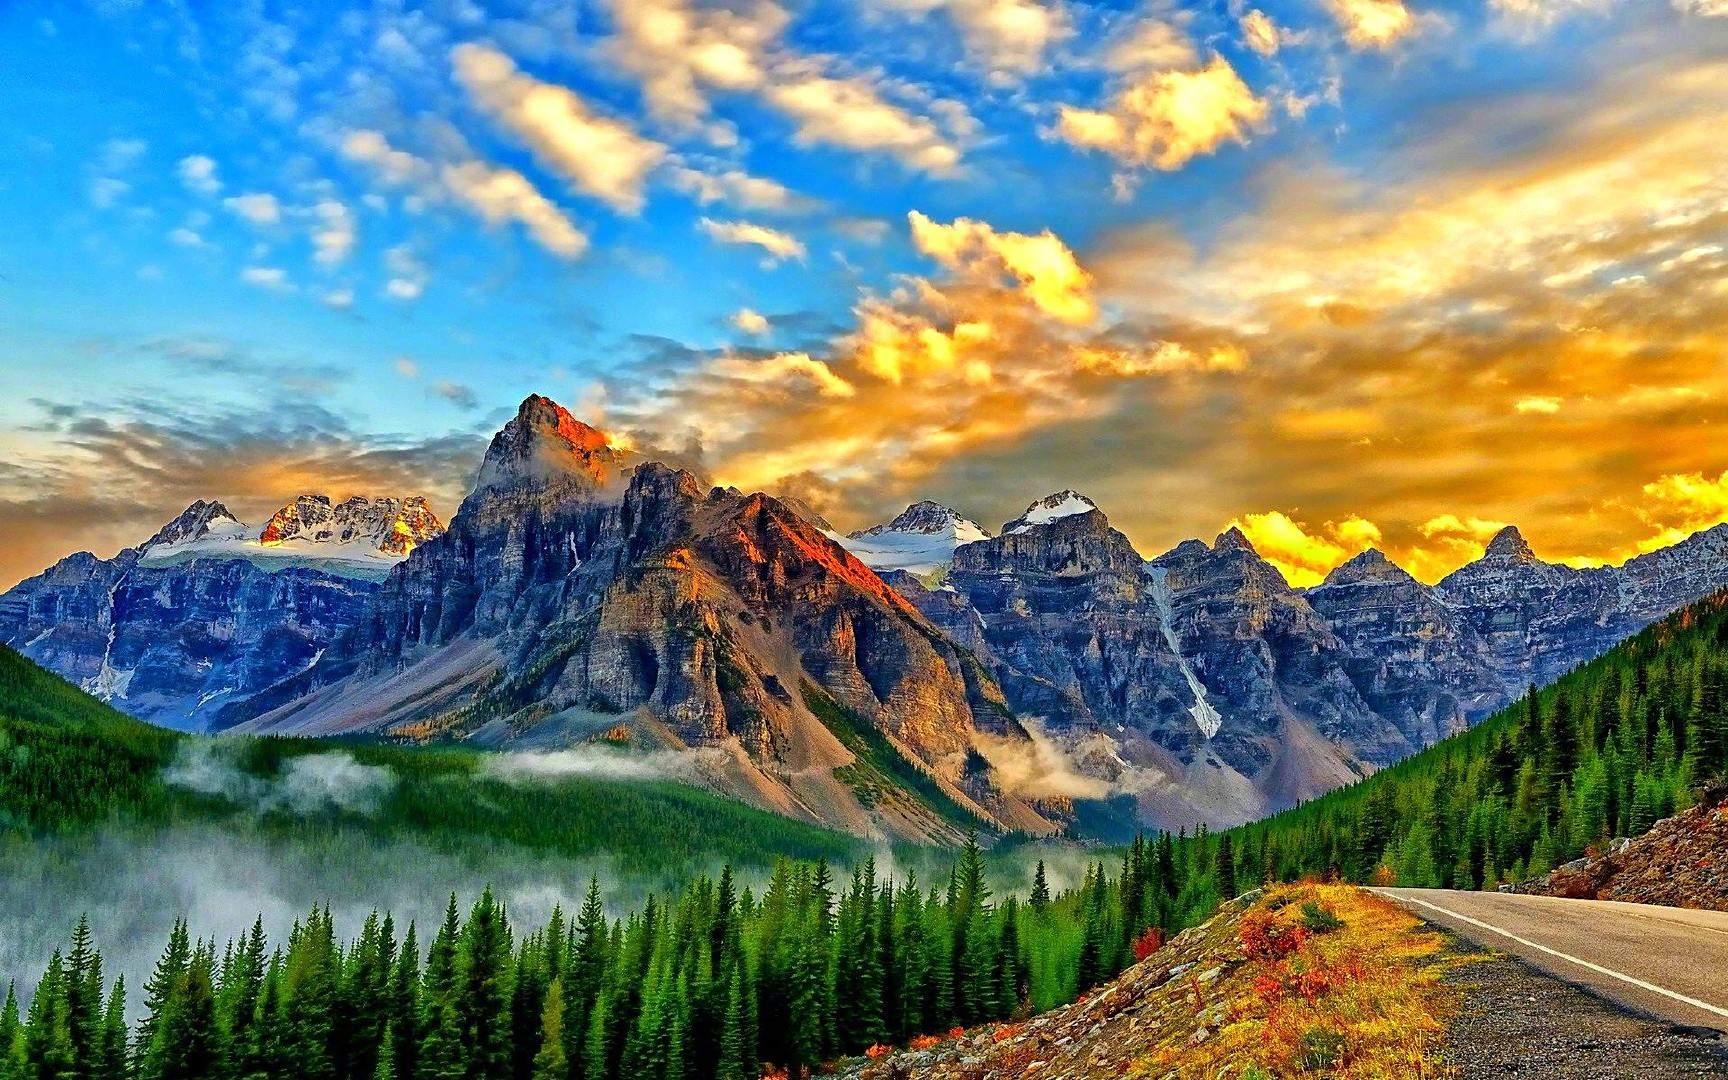 班夫国家公园位于落基山脉北段加拿大阿尔伯塔省主要景点